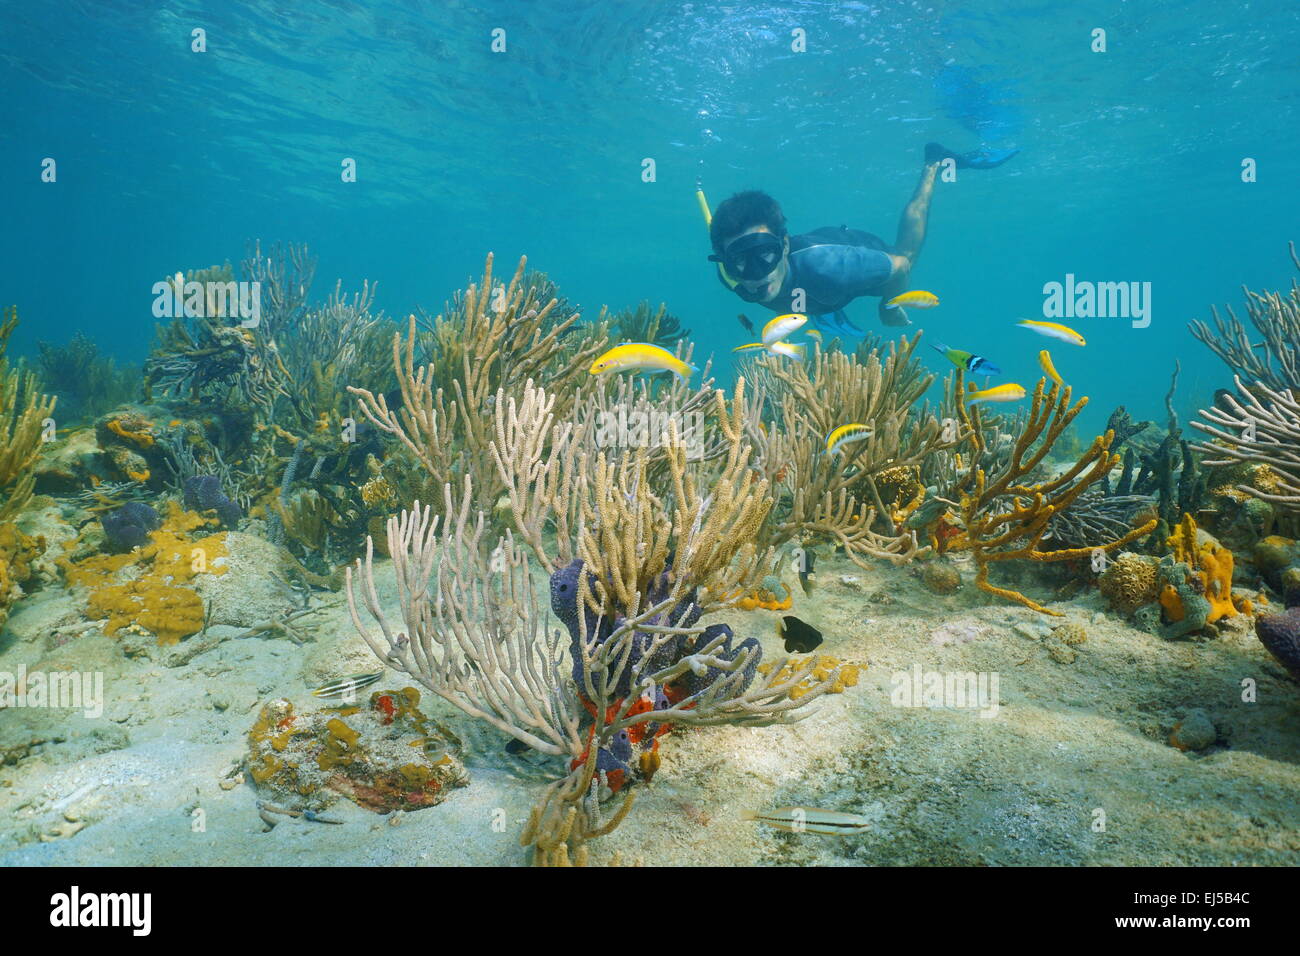 Mann unter Wasser Schnorcheln am Riff mit weichen Korallen und tropischen Fischen, Karibik, Panama Stockfoto